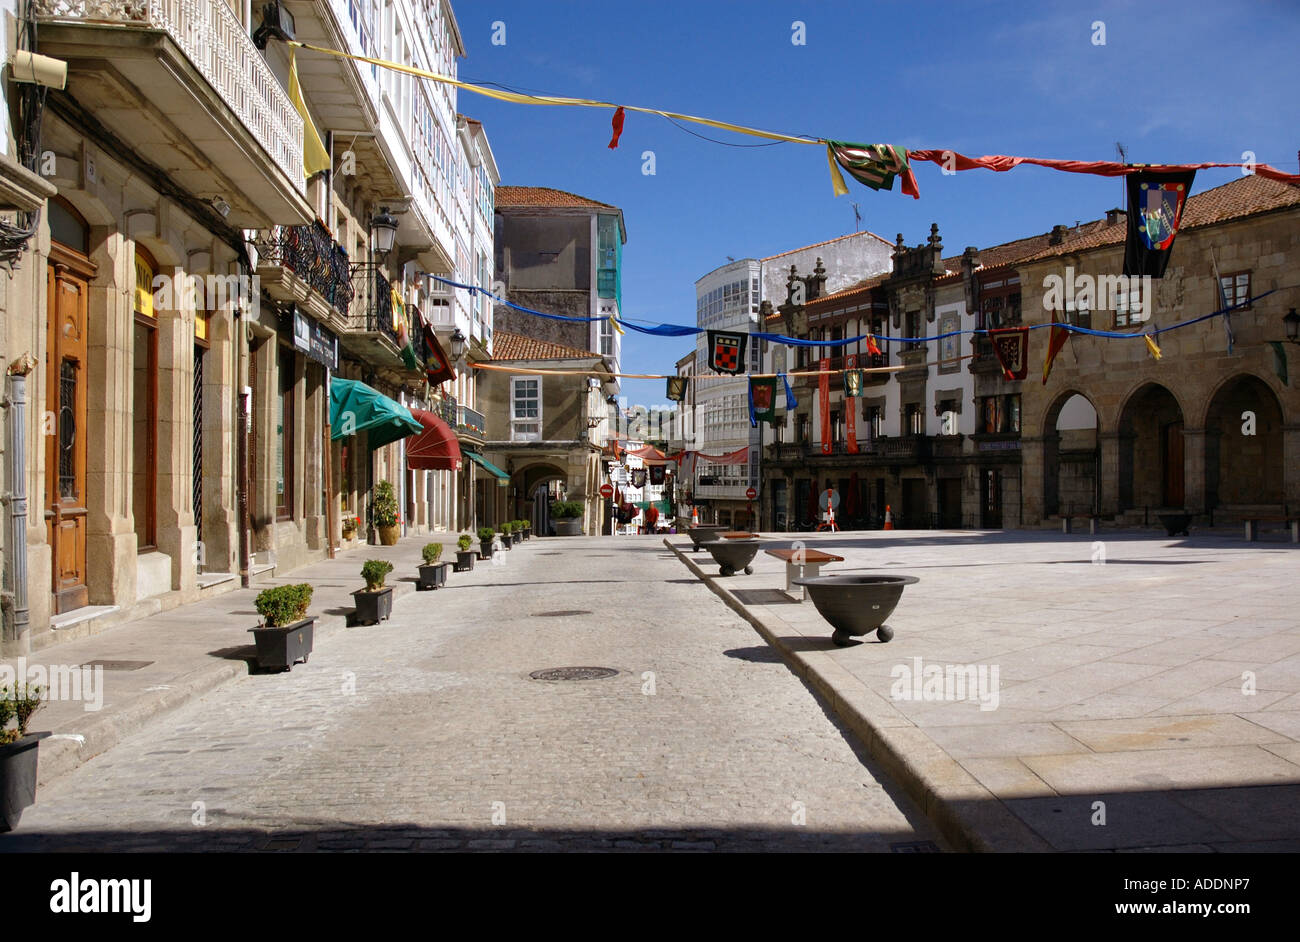 Blick auf die Altstadt von Betanzos Galizien A Coruña España Iberia Spanien Europa Stockfoto